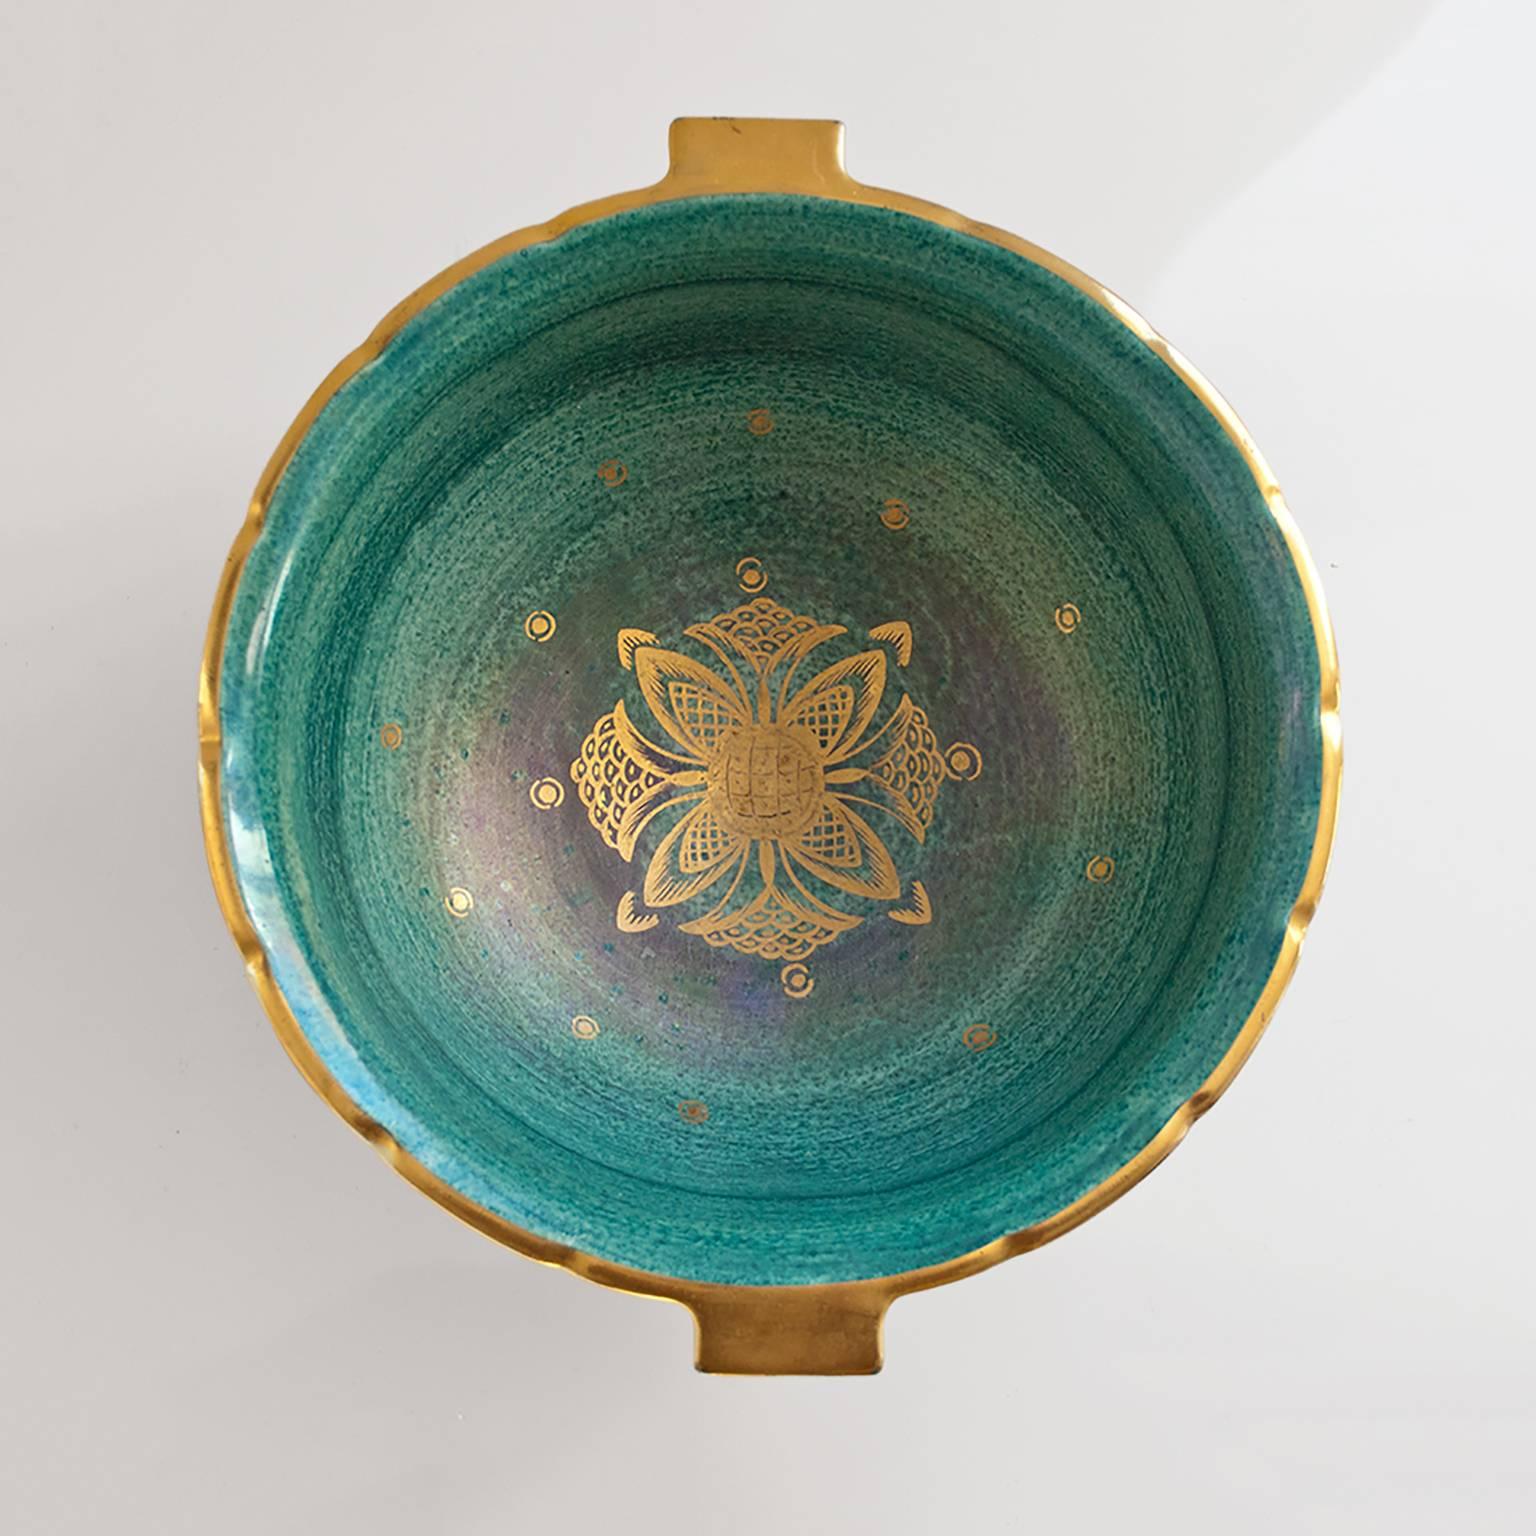 Glazed Josef Ekberg Scandinavian Modern Ceramic Footed Bowl, Gustavsberg